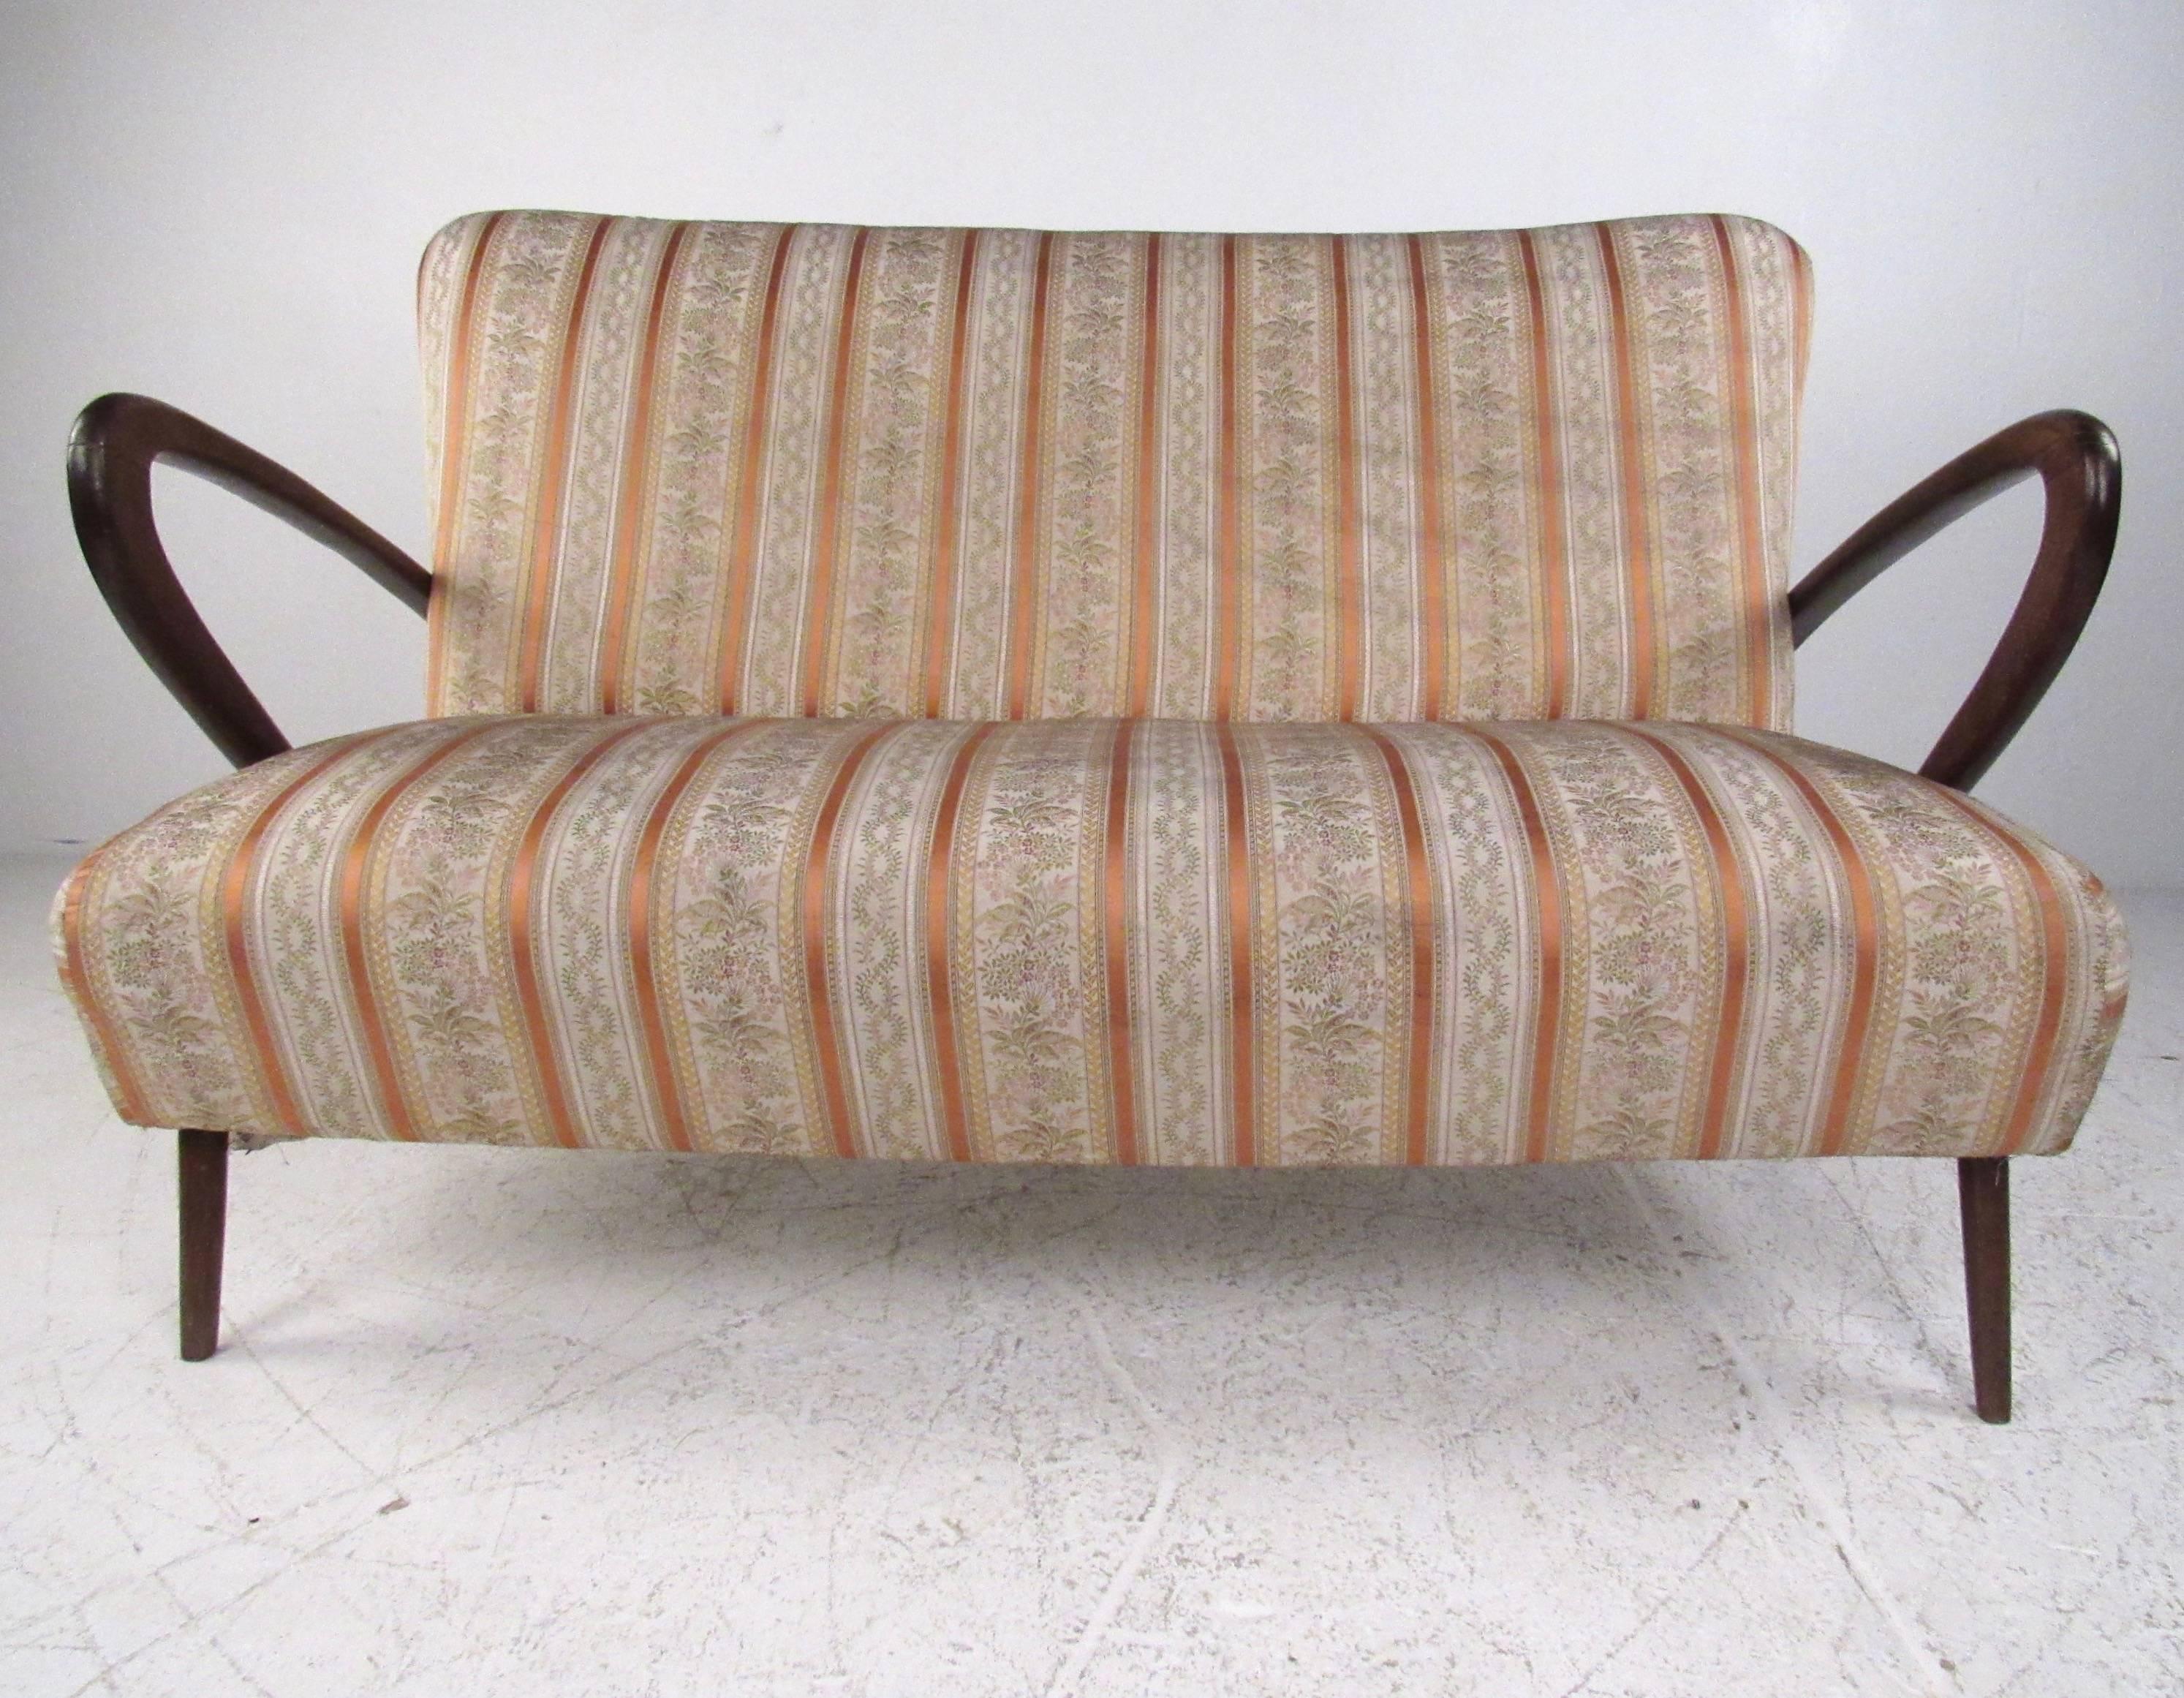 Dieses atemberaubende Zweisitzer-Sofa zeichnet sich durch geschwungene Hartholzarme und schlanke, zierliche Beine aus. Einzigartiger Vintage-Stoff unterstreicht den Mid-Century-Charme dieses eleganten italienischen Sessels. Passende Sessel